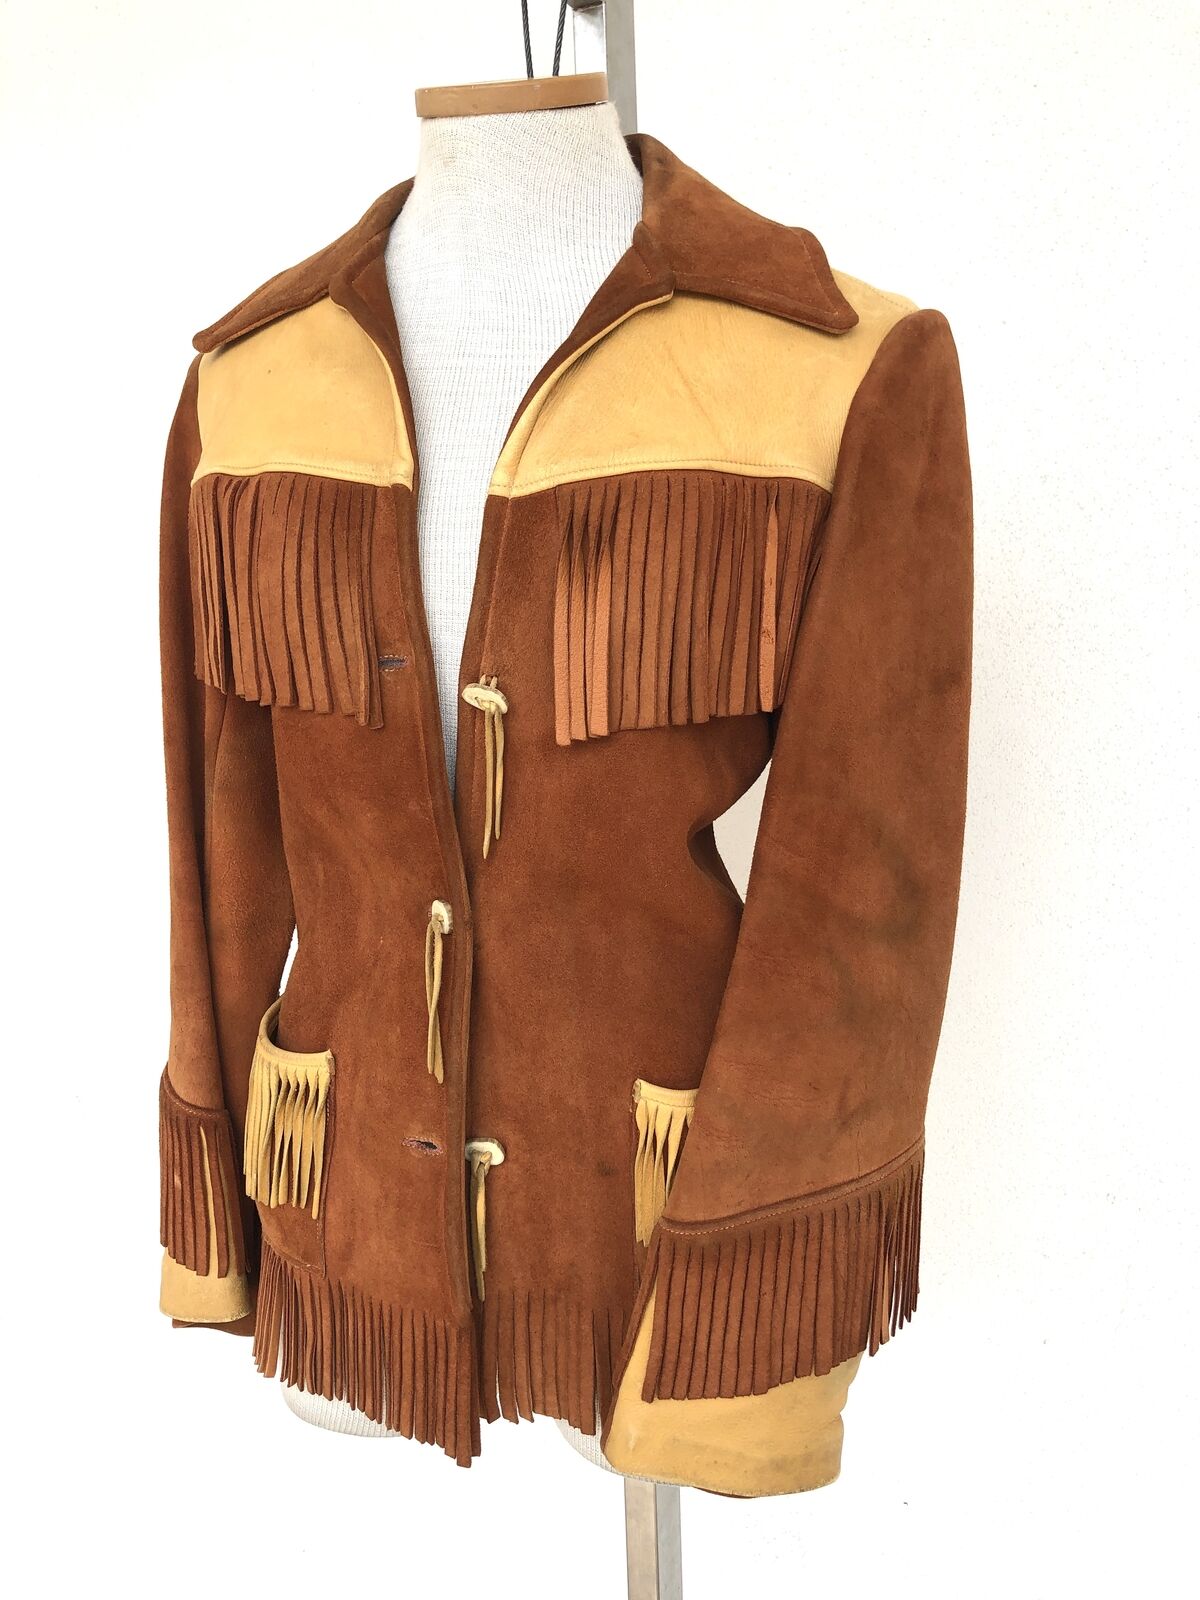 Vintage 1970s Suede Leather Western Fringed Jacket - Maker of Jacket